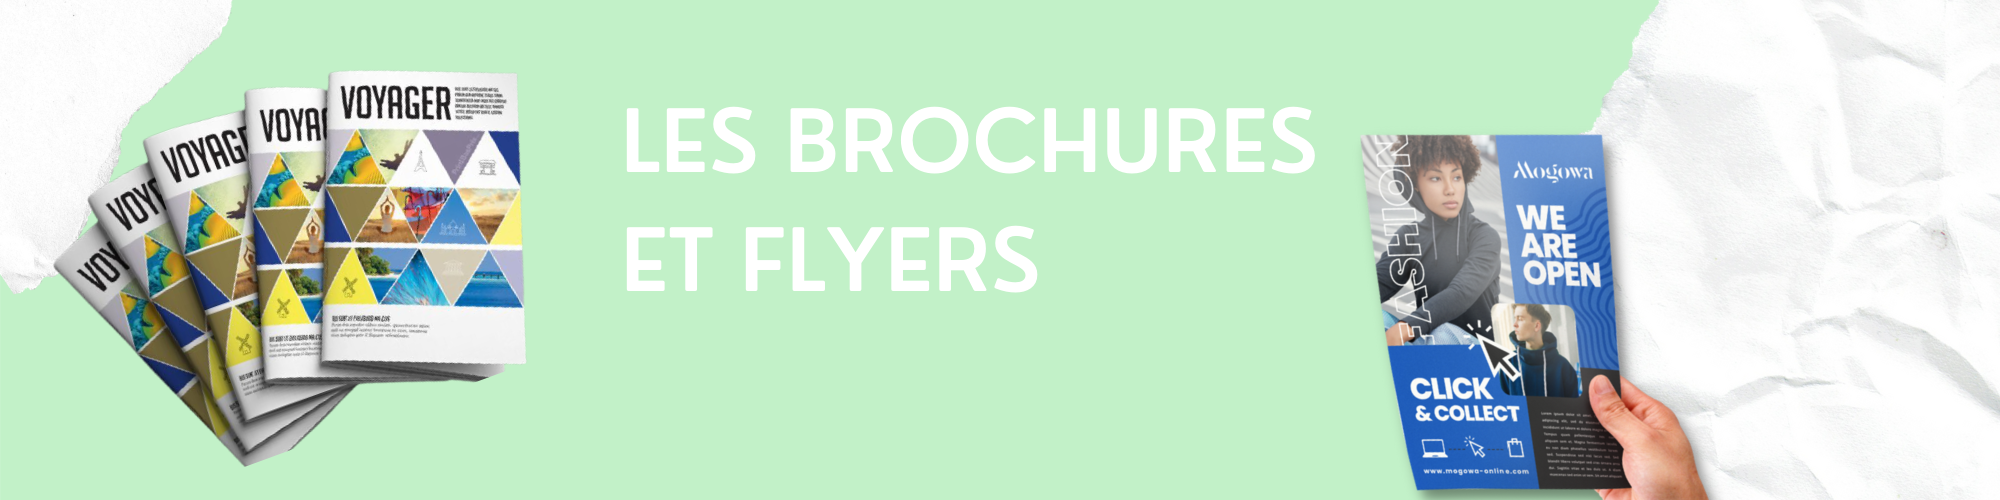 LES BROCHURES ET FLYERS